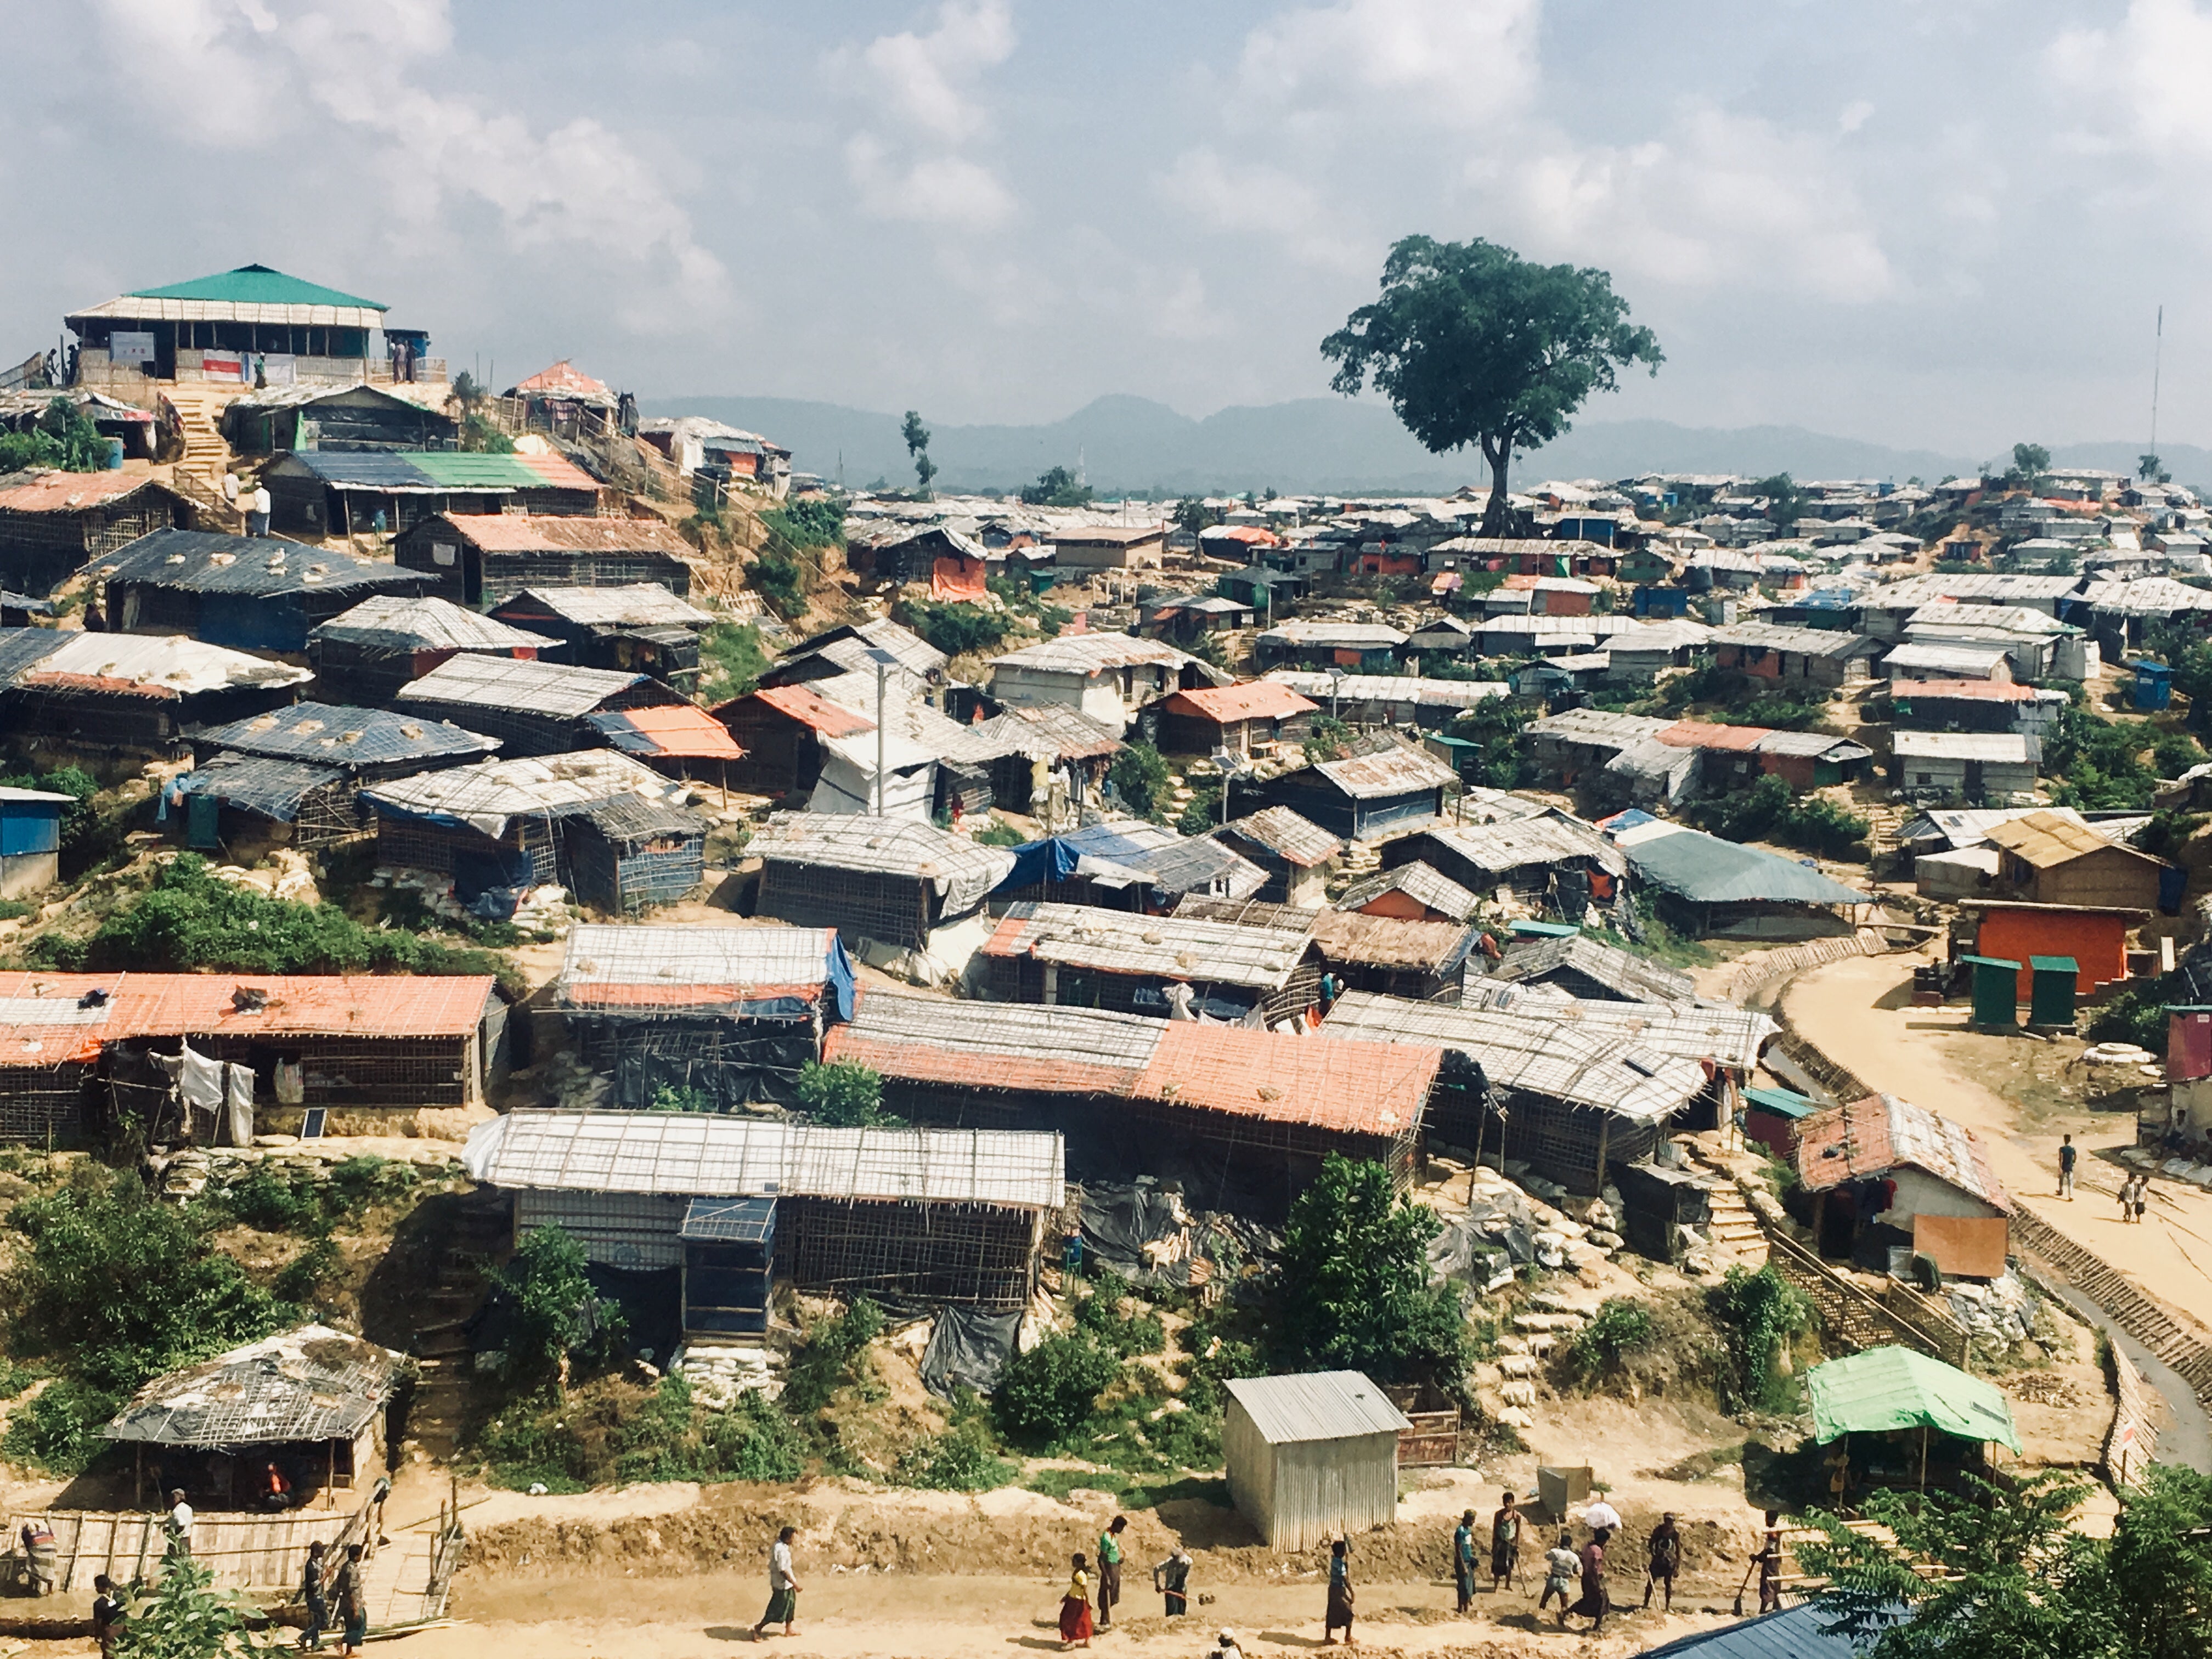 Cox’s Bazar on maailman suurin pakolaisleiri, jossa asuu lähes miljoona pakolaista. Leirillä asuvilta perheiltä puuttuu perustarpeet kuten ruokaa, vettä ja mahdollisuus koulunkäyntiin. Lisäksi ongelmia aiheuttavat naisiin kohdistuva väkivalta, luonnonkatastrofit sekä tilanpuute. 